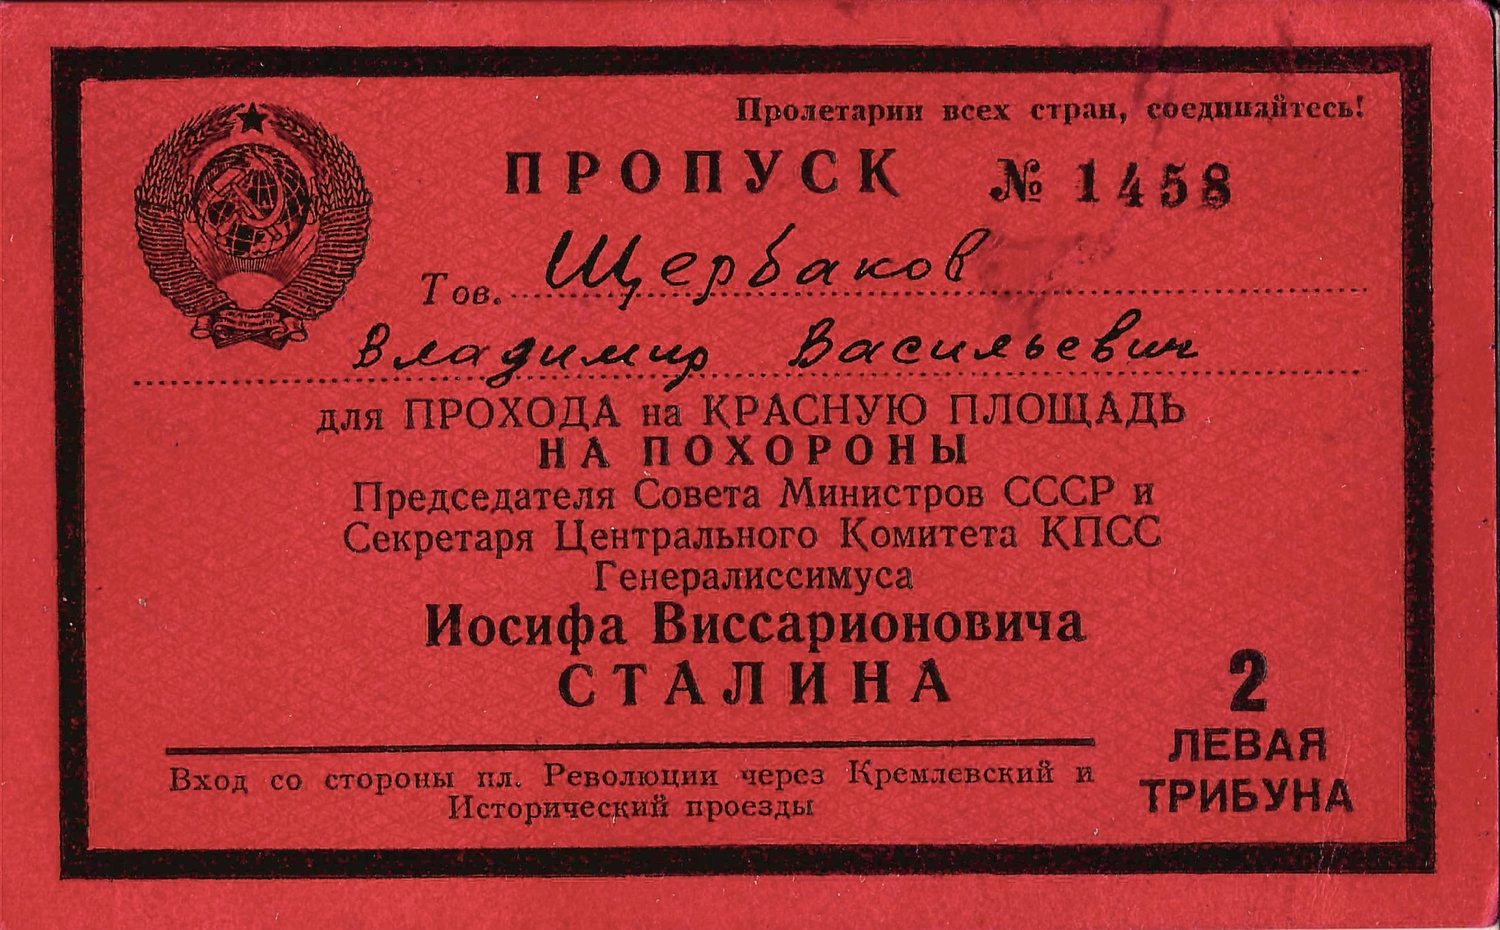 Пропуск для прохода на Красную Площадь на прощание с Иосифом Виссарионовичем Сталиным 9 марта 1953 года на имя Владимира Васильевича Щербакова.